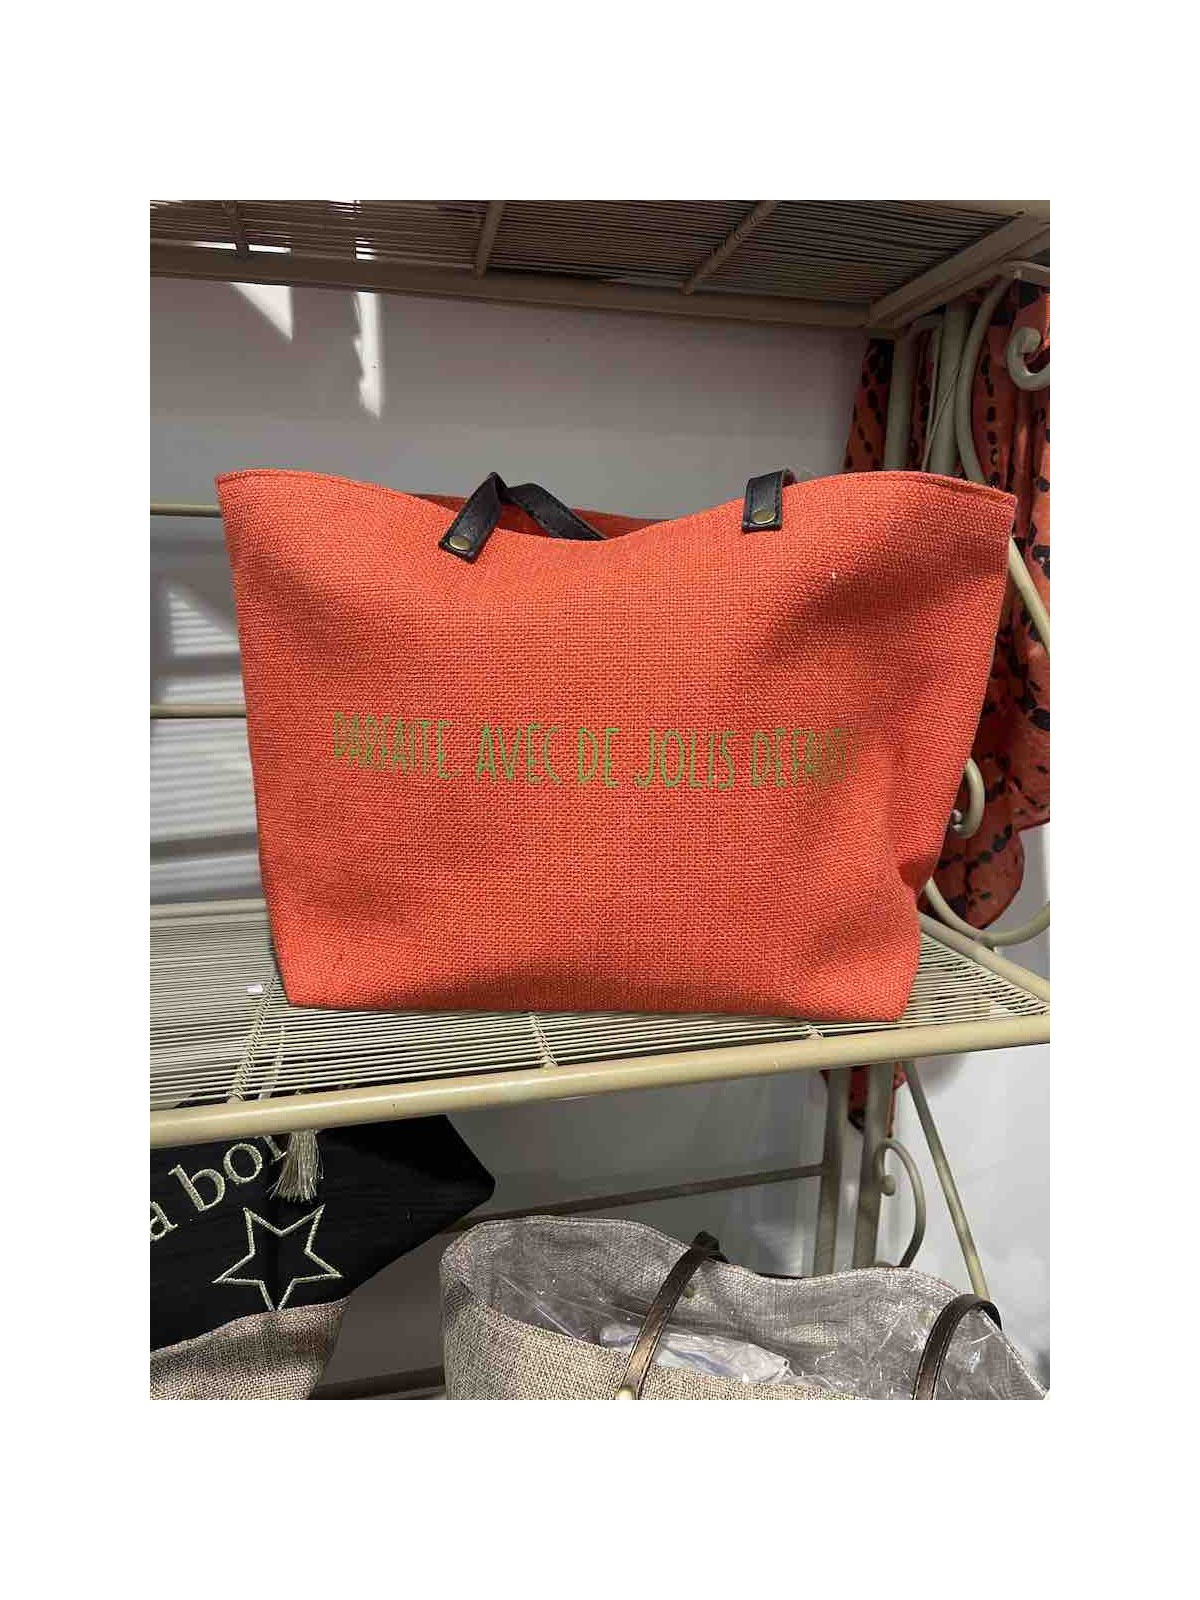 Sac à main orange avec inscriptions vertes l 1 vue de face l Tilleulmenthe mode boutique de vêtements femme en ligne